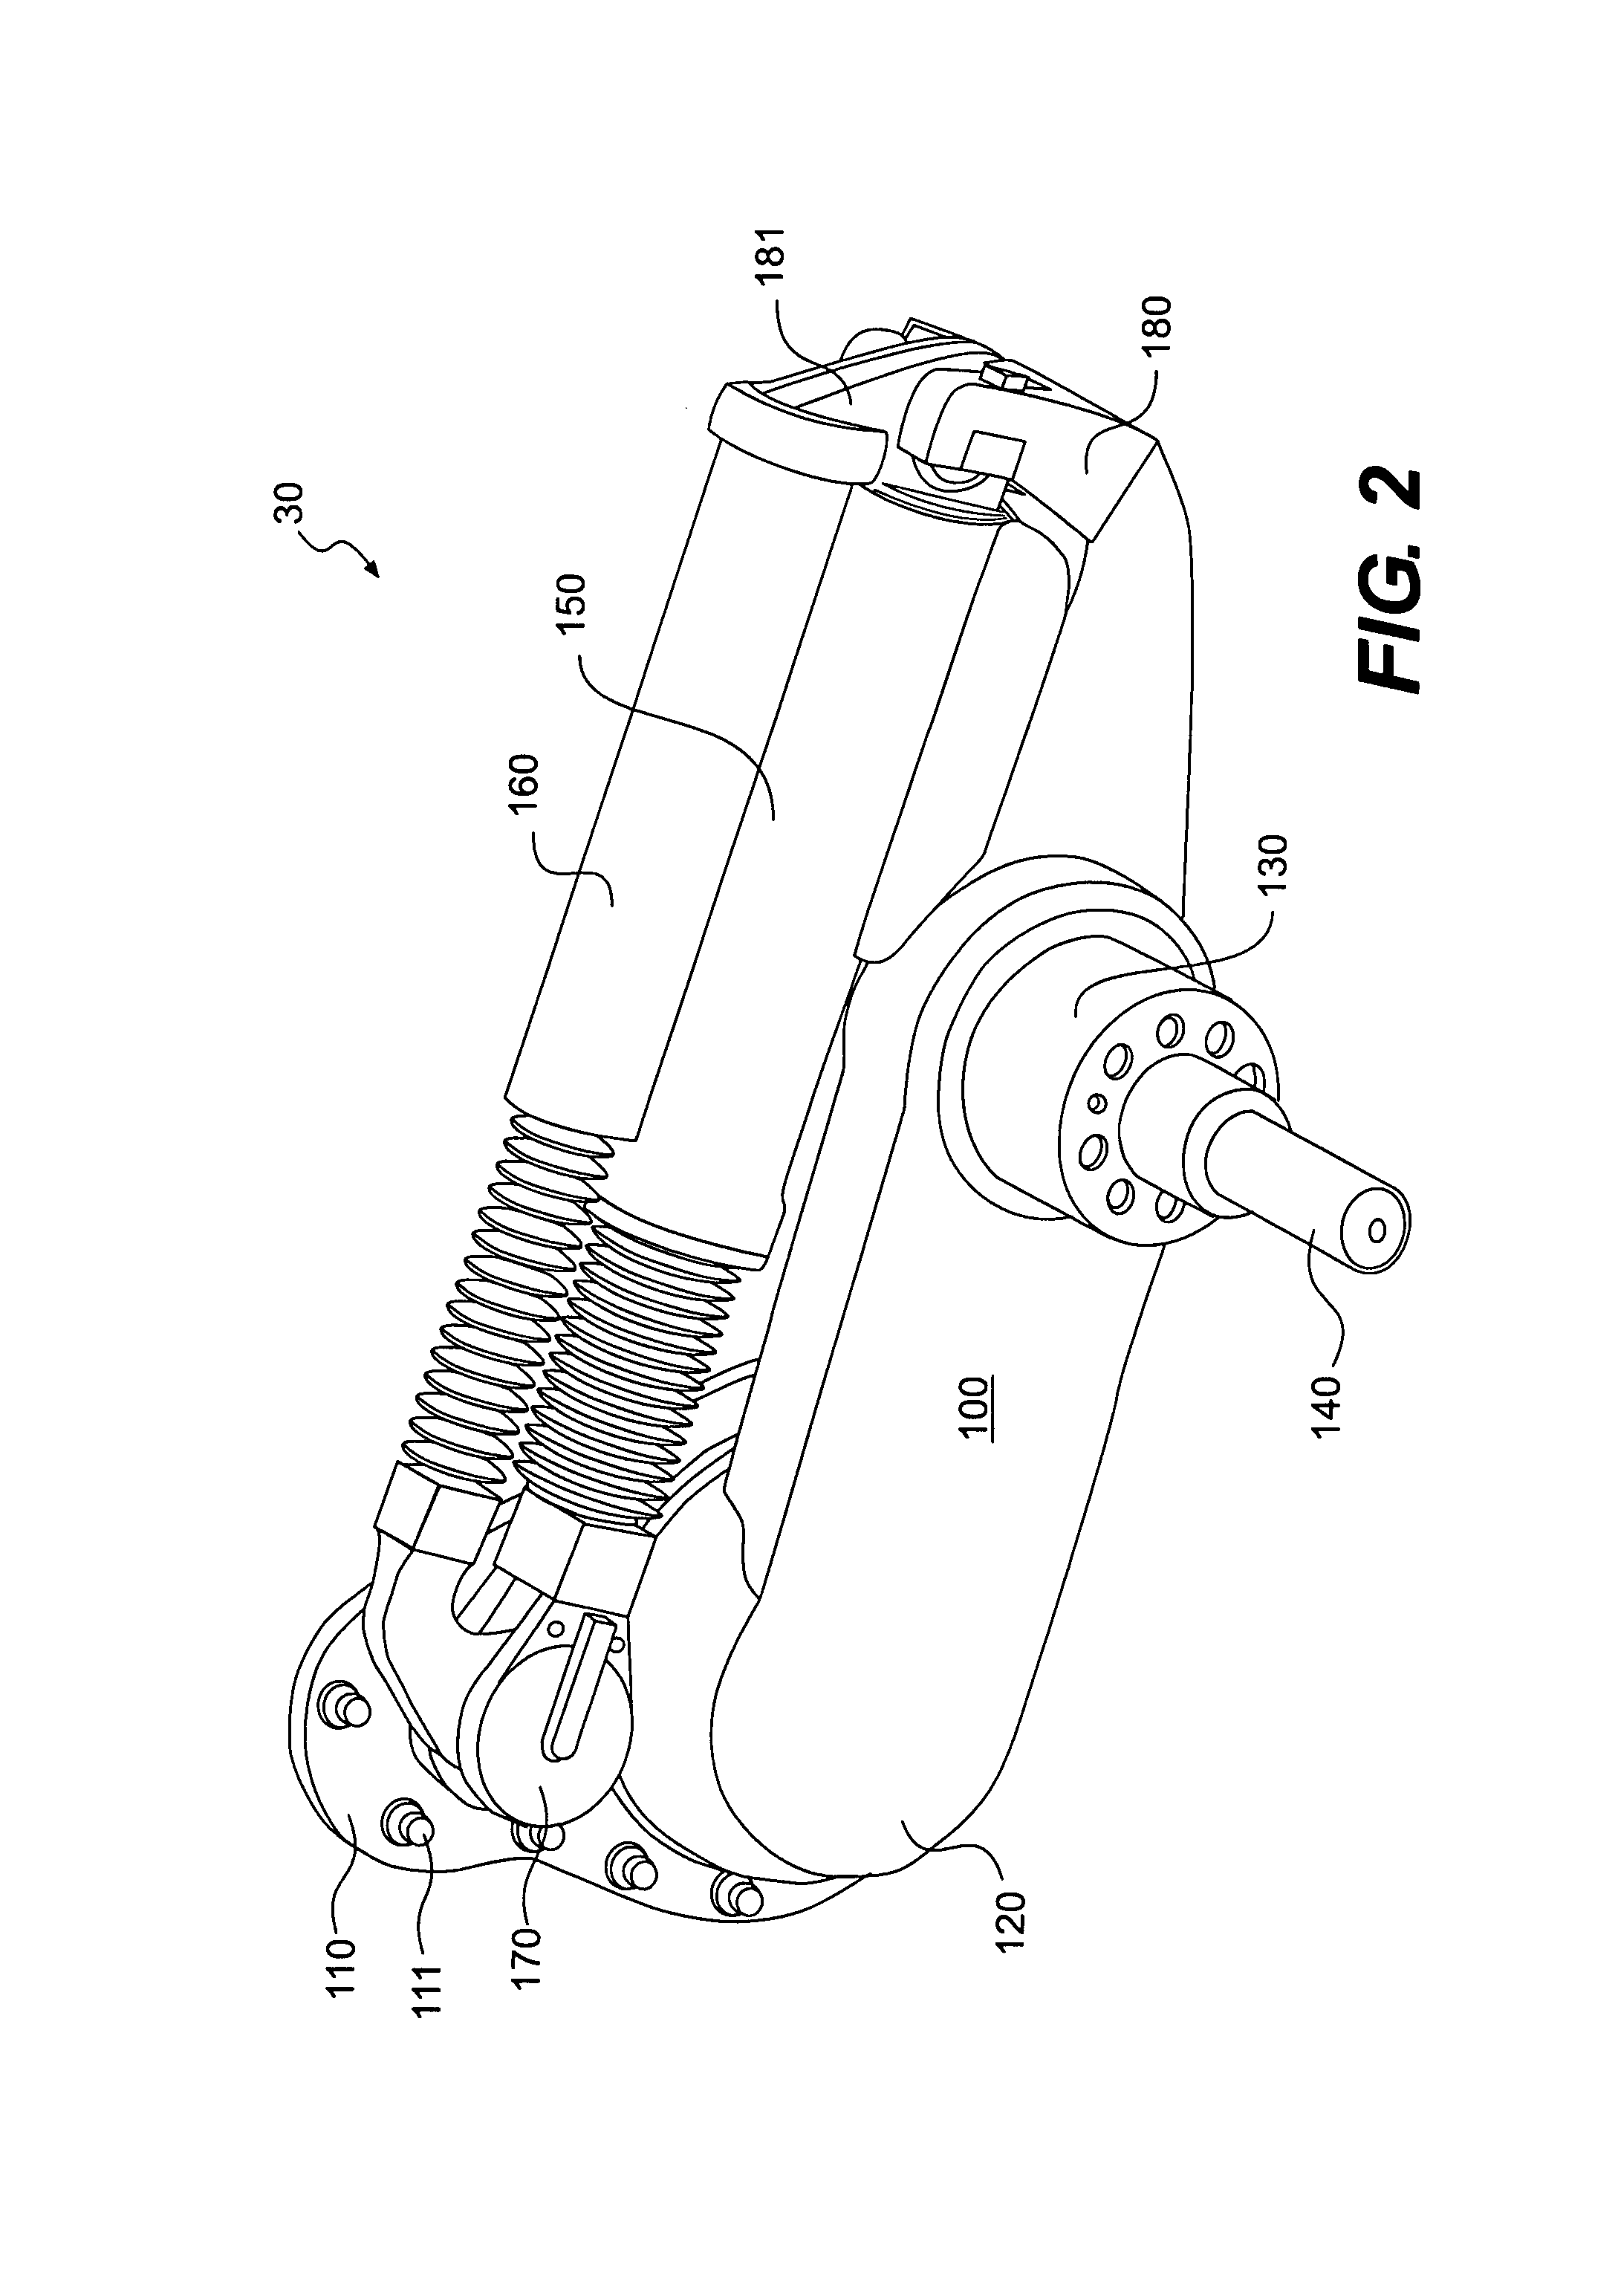 Vehicle suspension apparatus